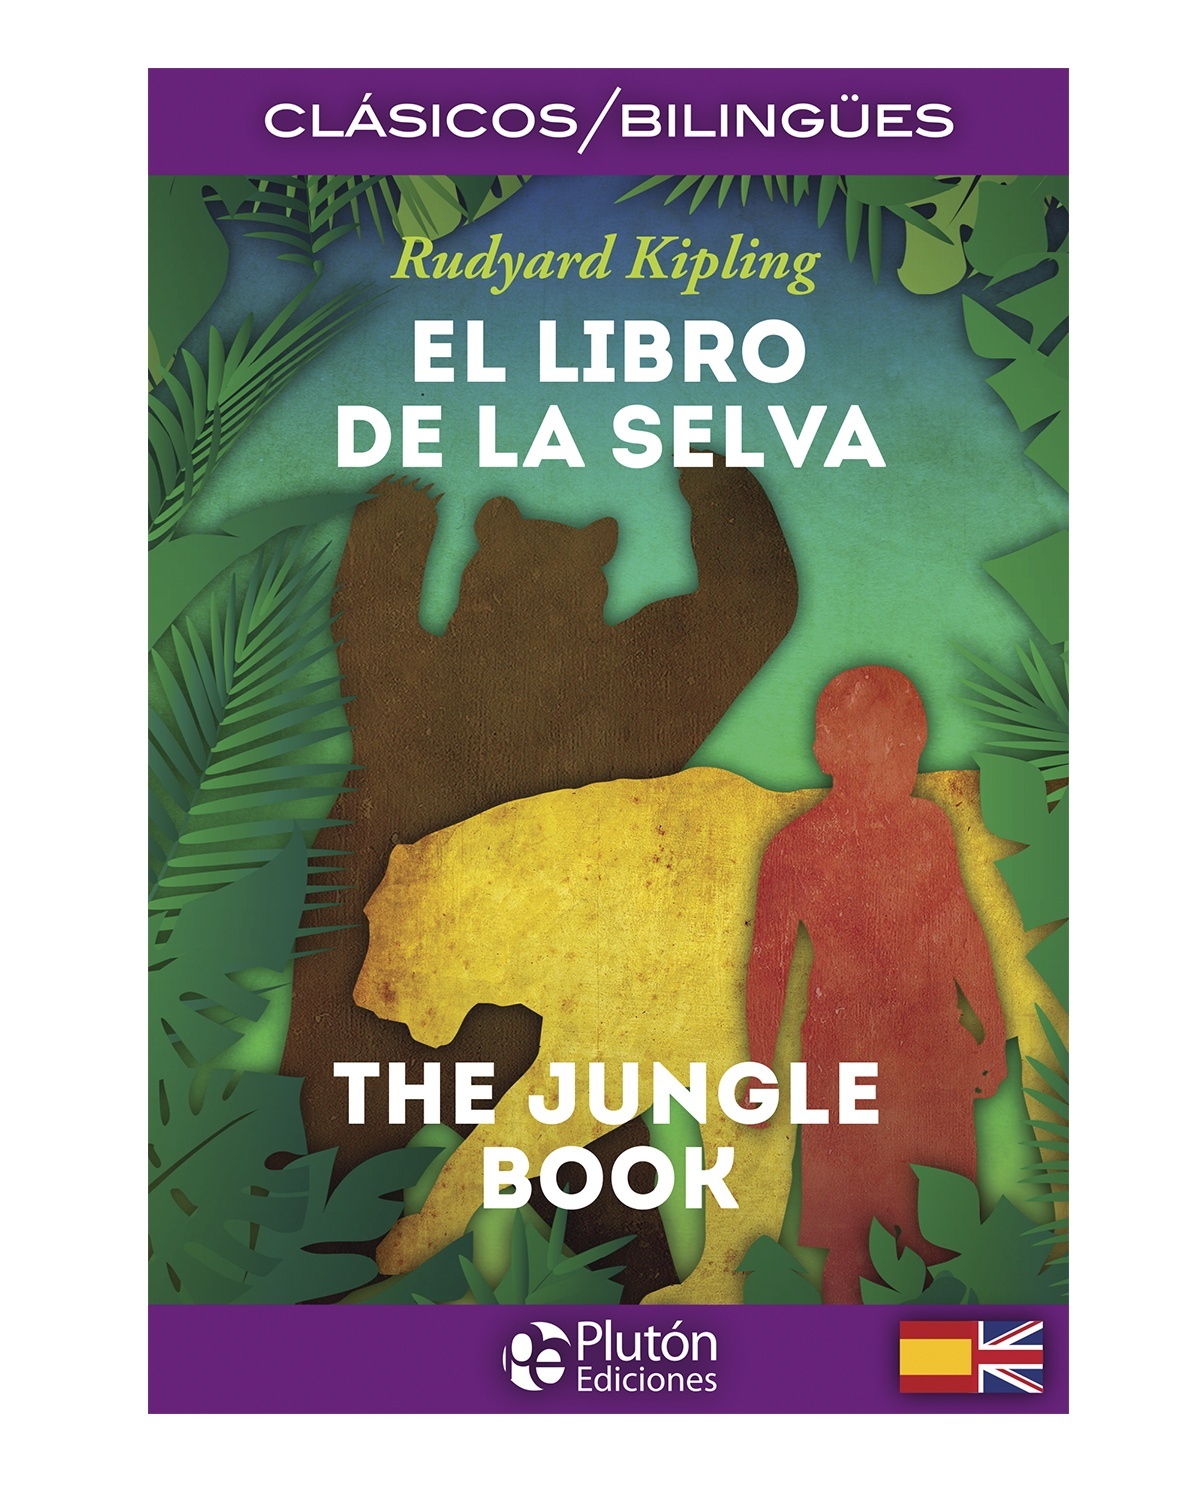 El Libro de la Selva / The Jungle Book